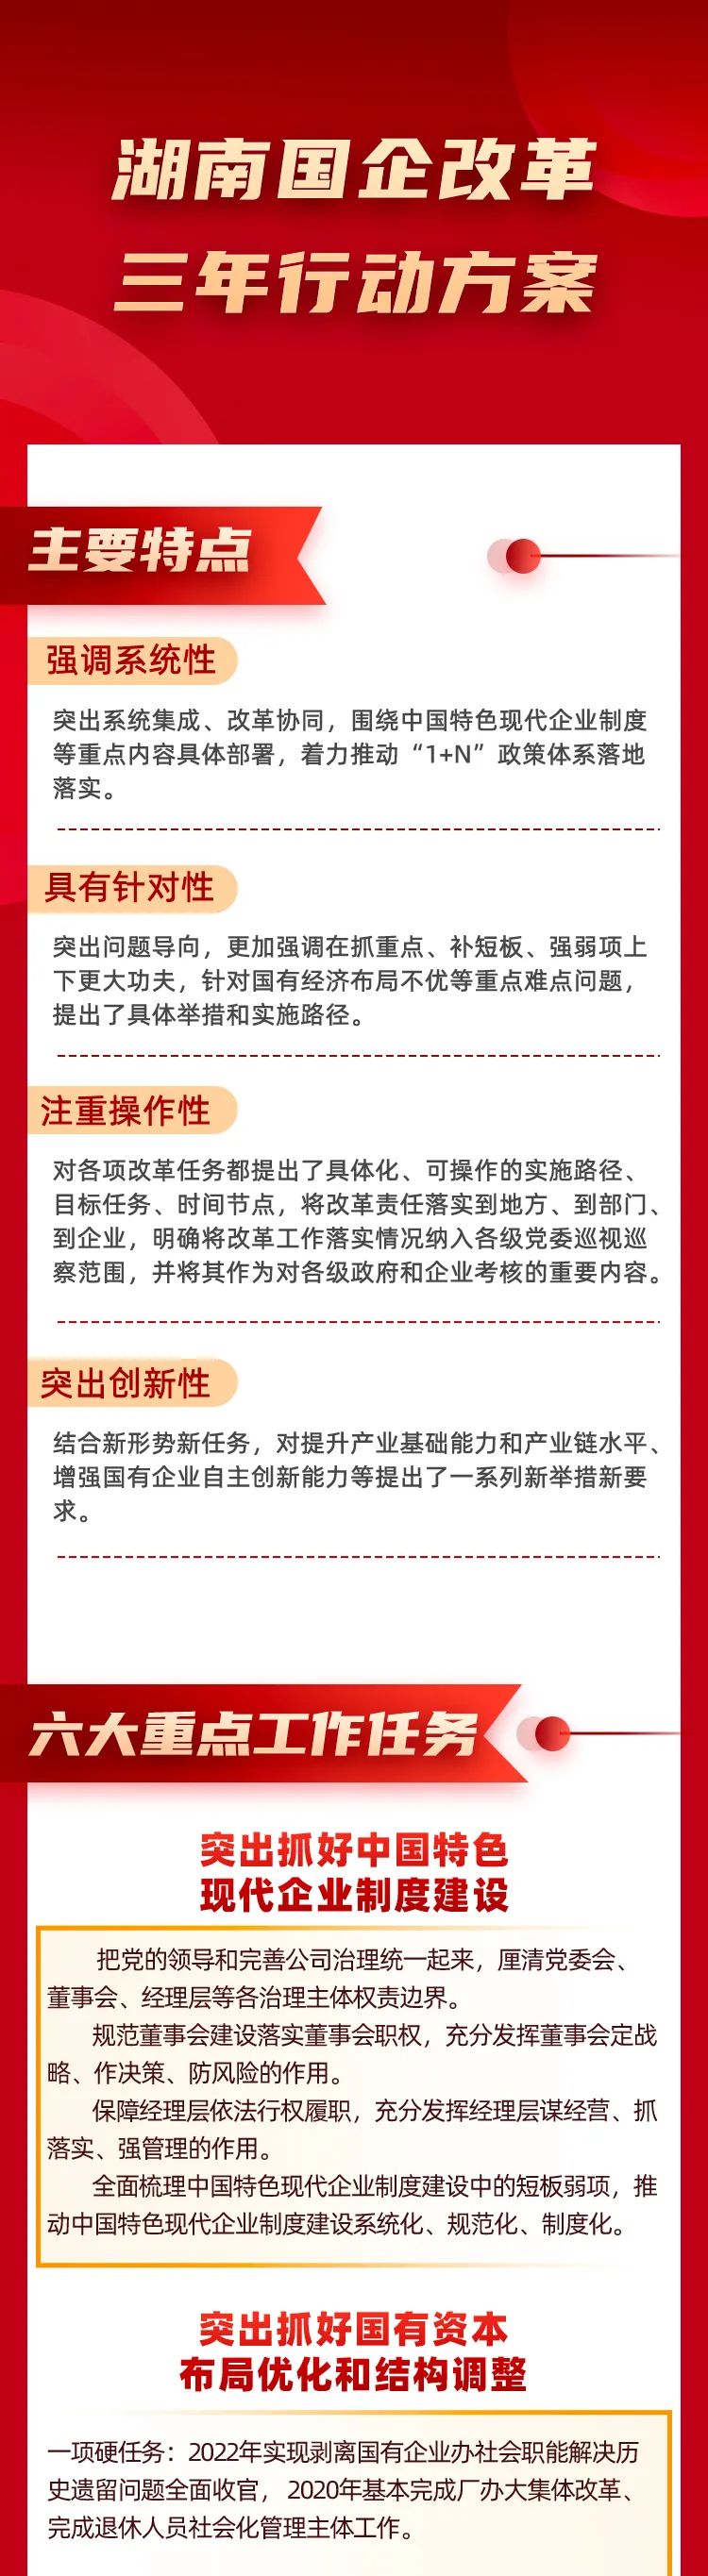 六大重点工作任务定调,湖南国企改革三年行动方案出炉